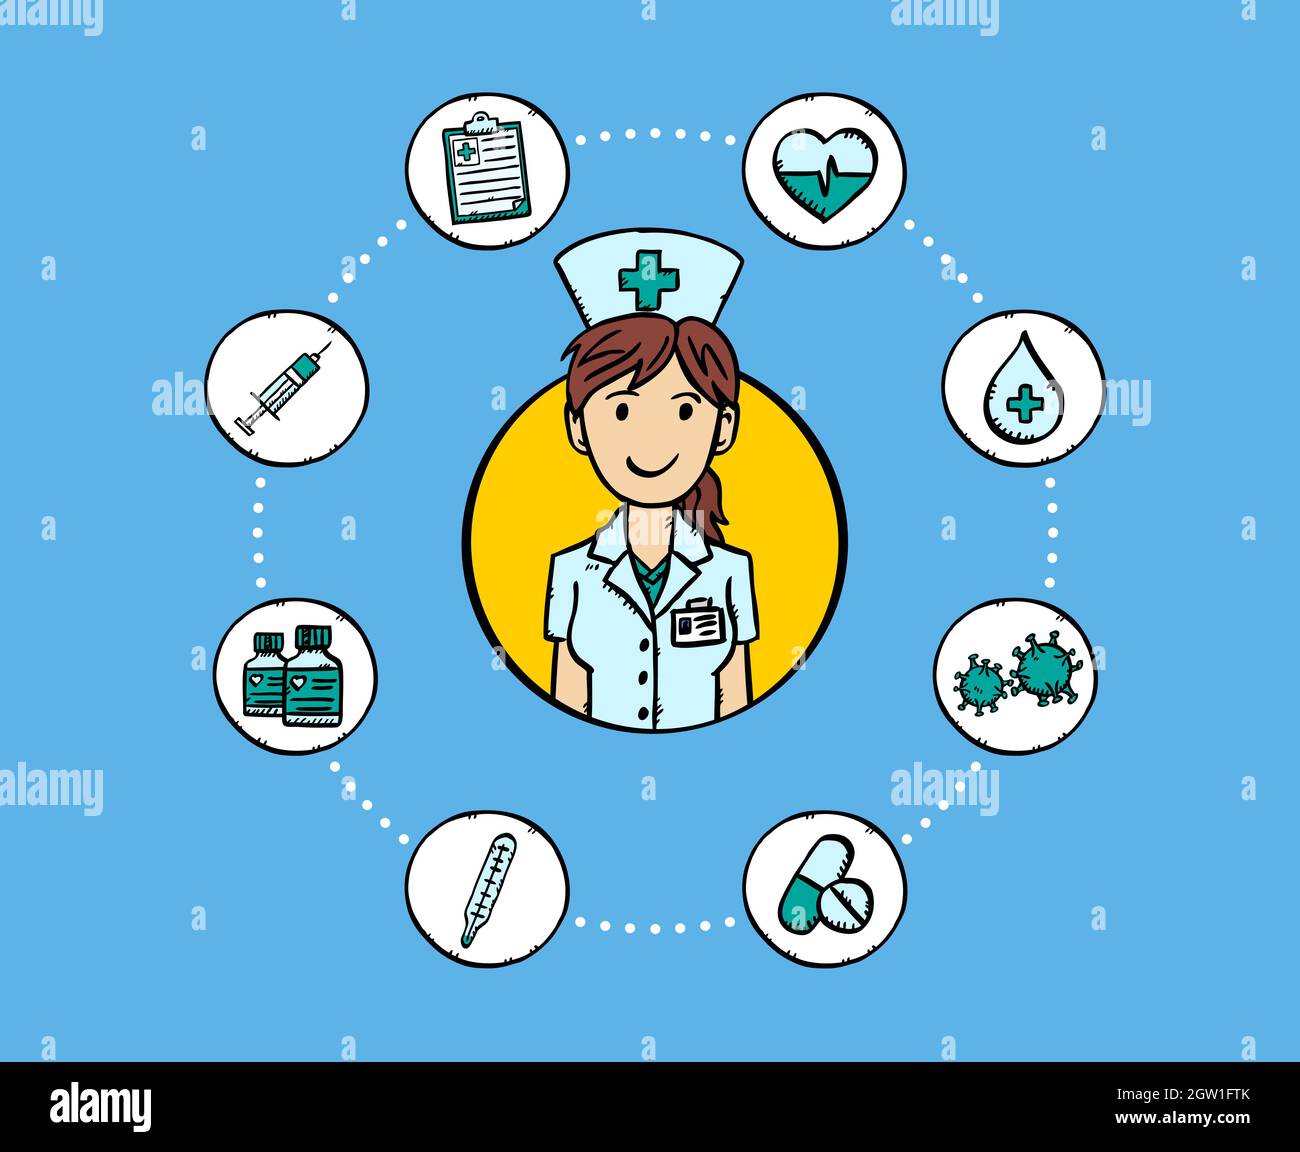 Vettore stile cartoon di avatar infermiera femminile, circondato da icone mediche. Lo stile di schizzo mostra un'illustrazione colorata. Illustrazione Vettoriale